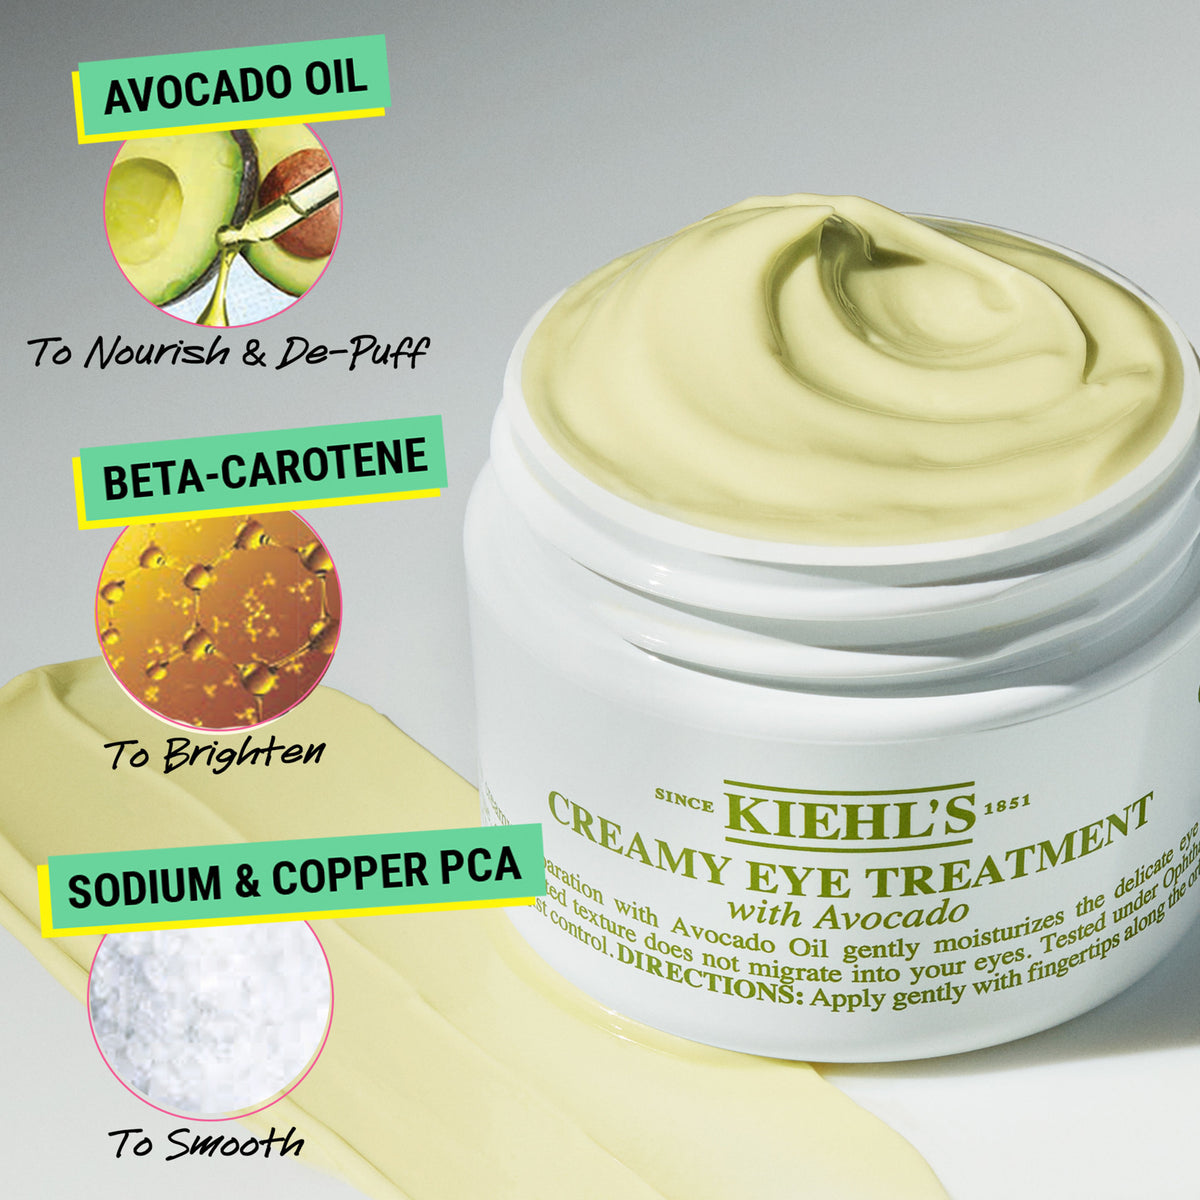 Kiehl's Since 1851 Creamy Eye Treatment With Avocado .